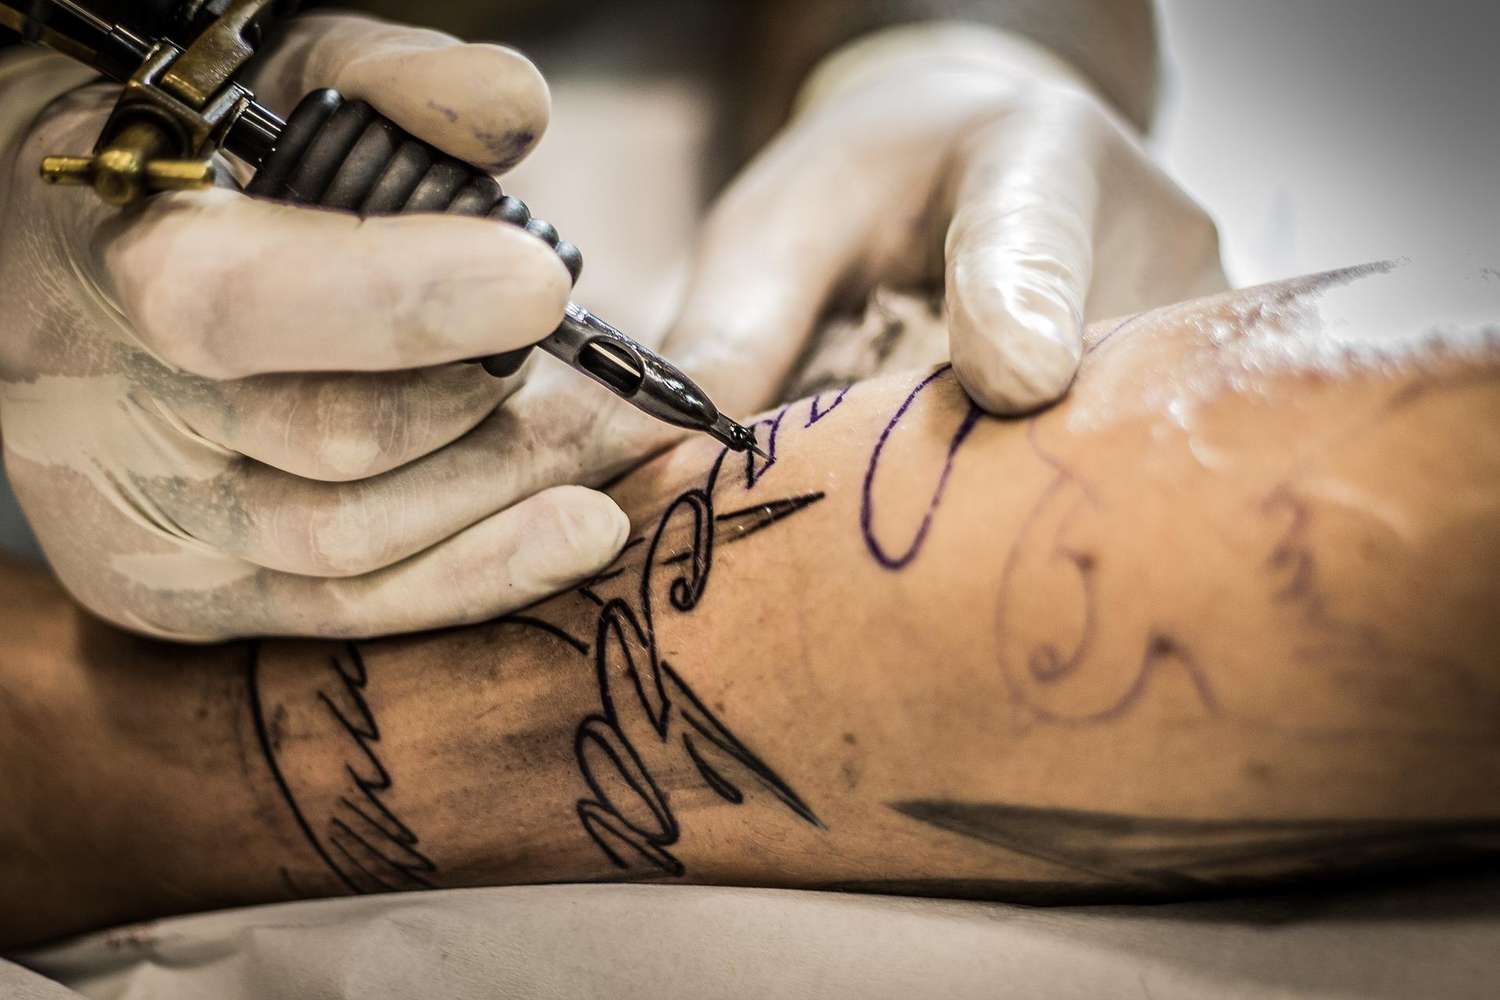 Un estudio sugiere que tatuajes y piercings son mas frecuentes entre quienes sufrieron abusos y abandono en la infancia